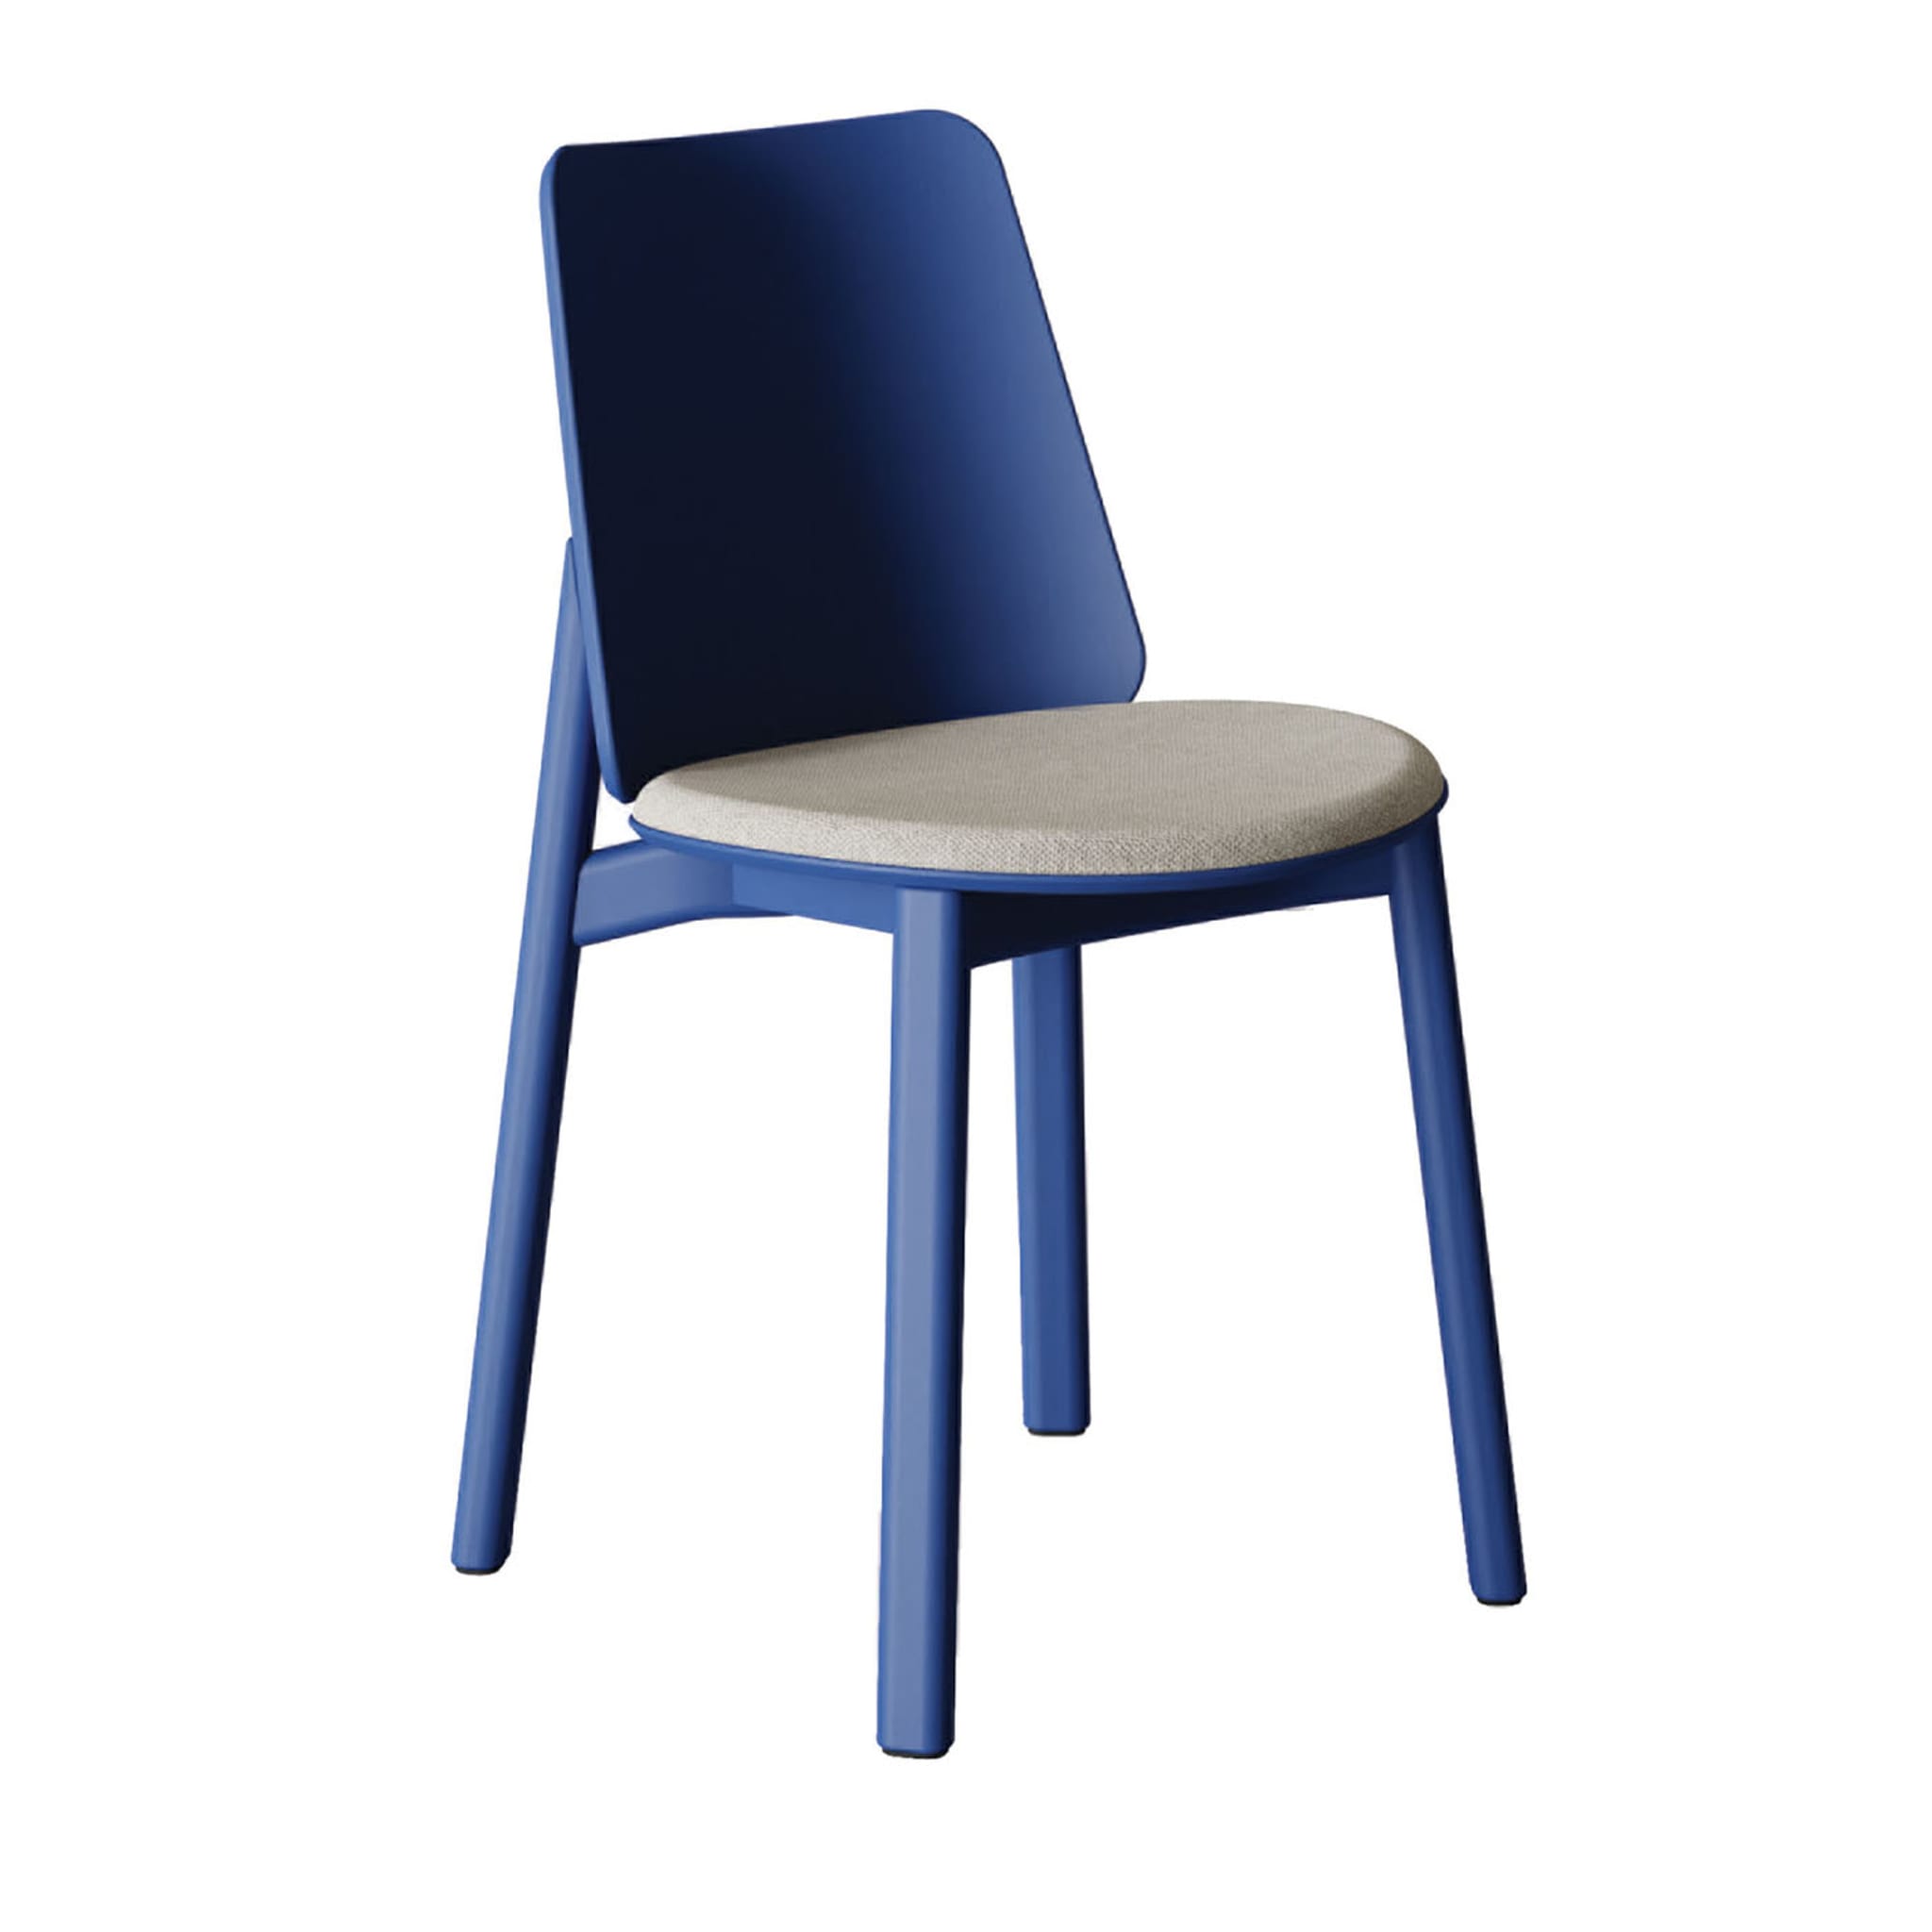 Billa Blue Chair by Claudio Avetta - Main view